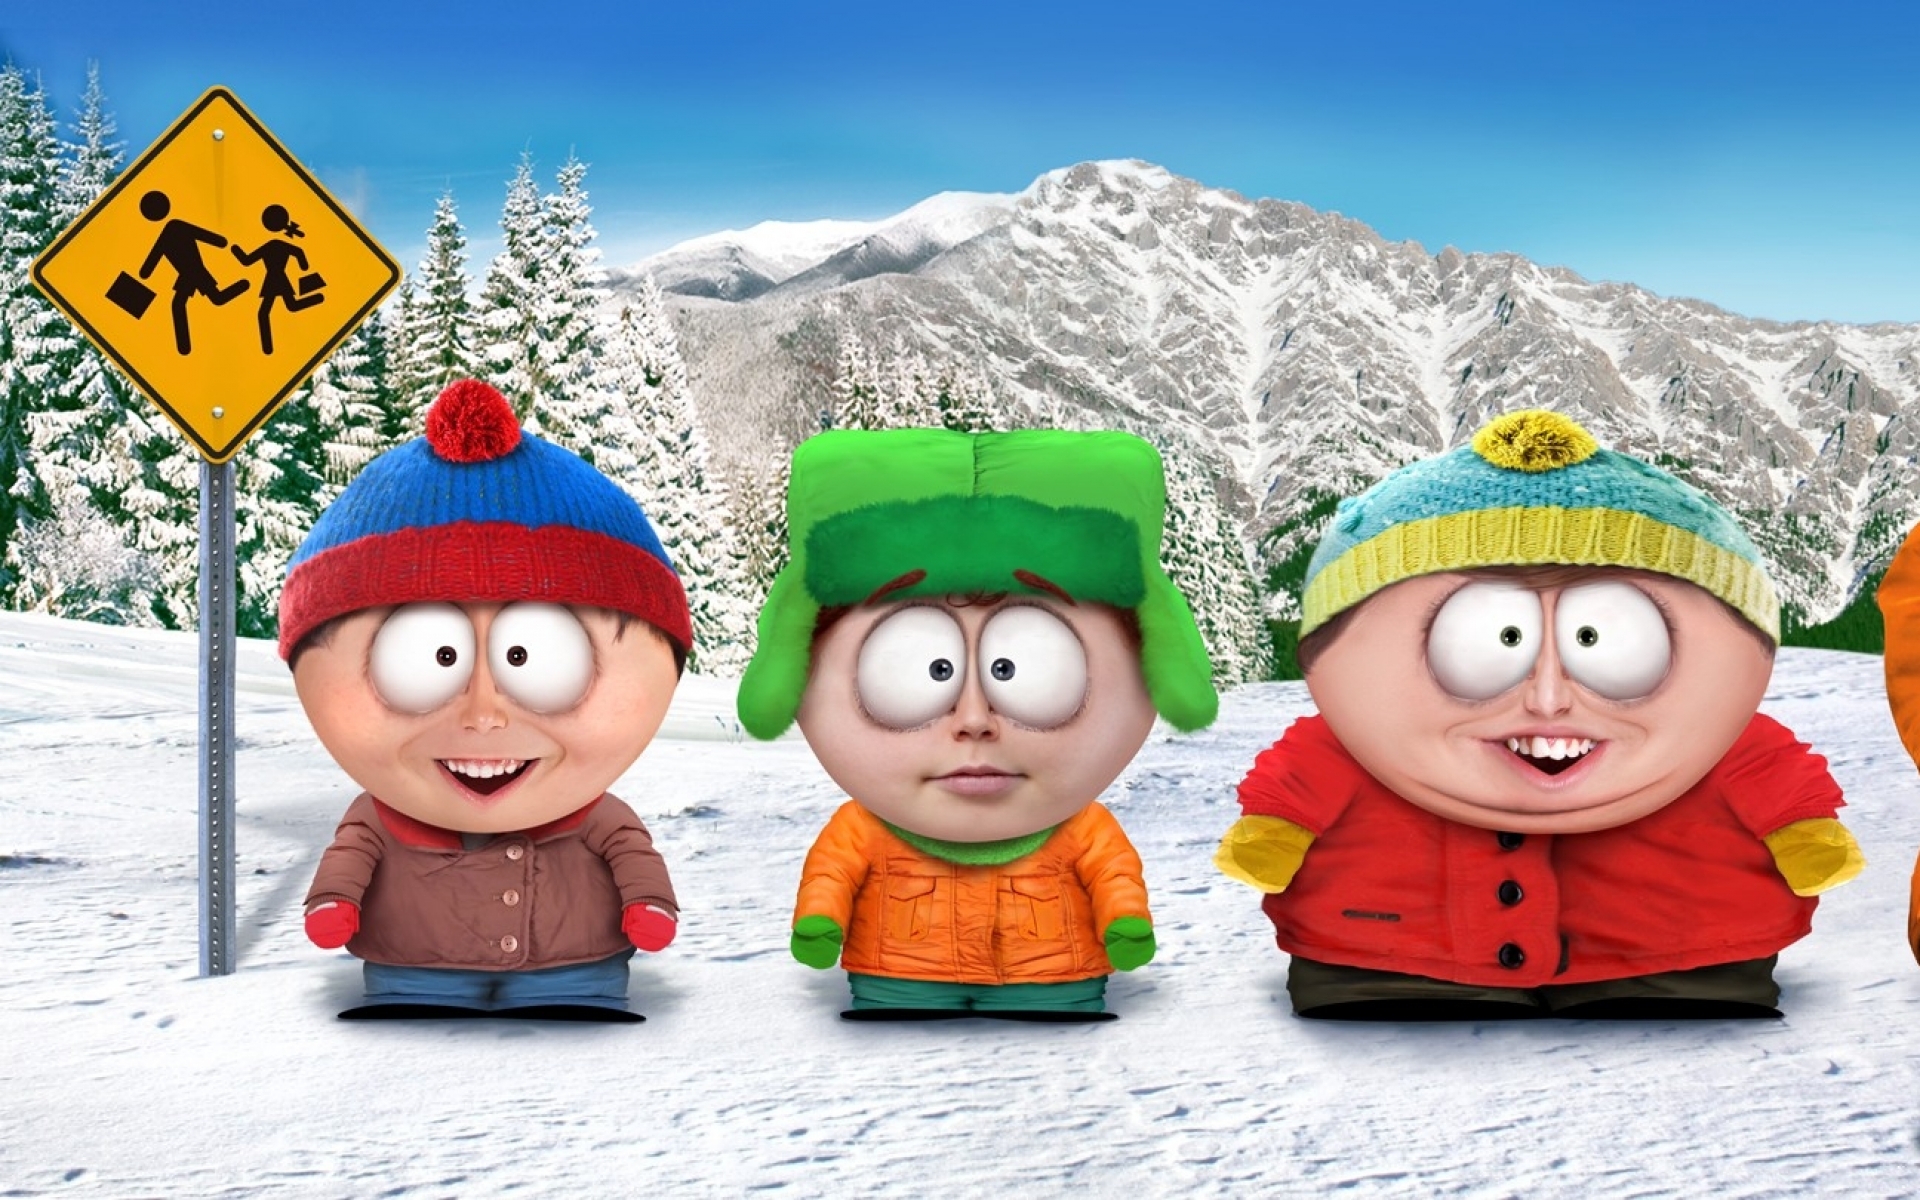 Fondos de pantalla de South Park para escritorio, descarga gratis imágenes  y fondos de South Park para PC | mob.org